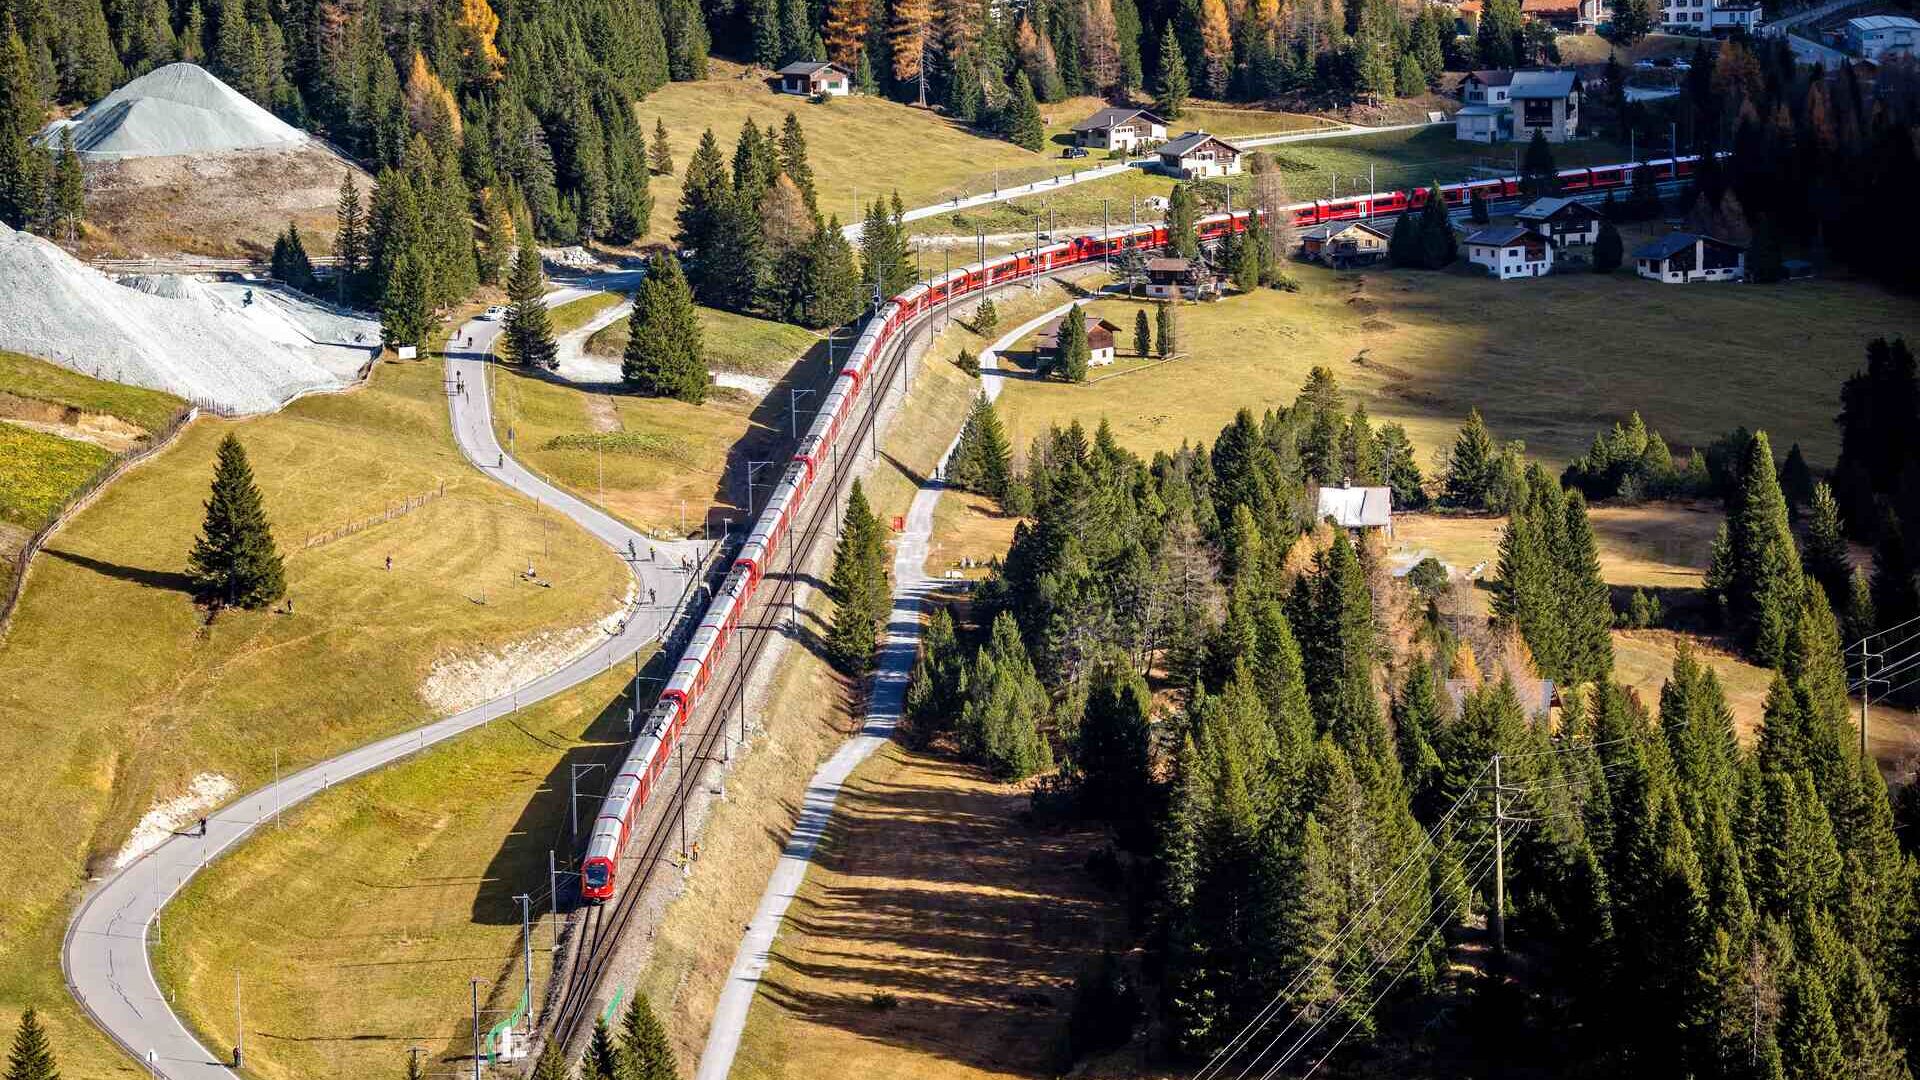 29 Ekim 2022'de İsviçre'deki Rhaetian Demiryolunun Albula hattında dünyanın en uzun dar hatlı treni (Fotoğraf: Andy Mettler/Swiss-Image)